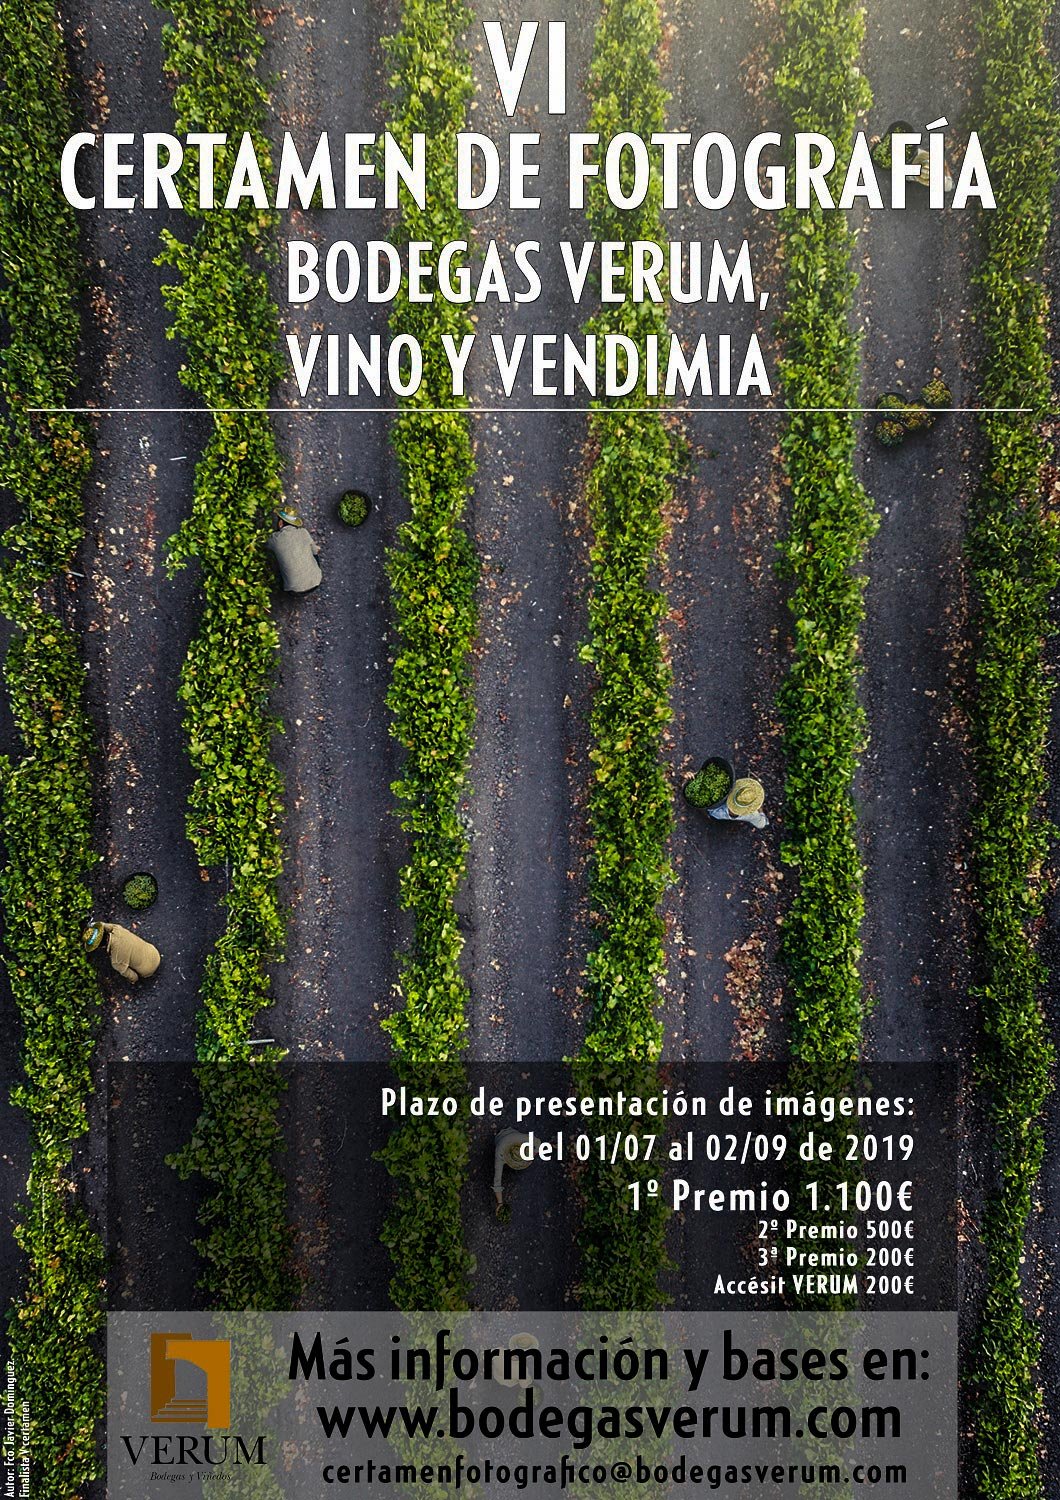 Un premio de 1.100€ para el ganador del VI Certamen de Fotografía Bodegas Verum, Vino y Vendimia